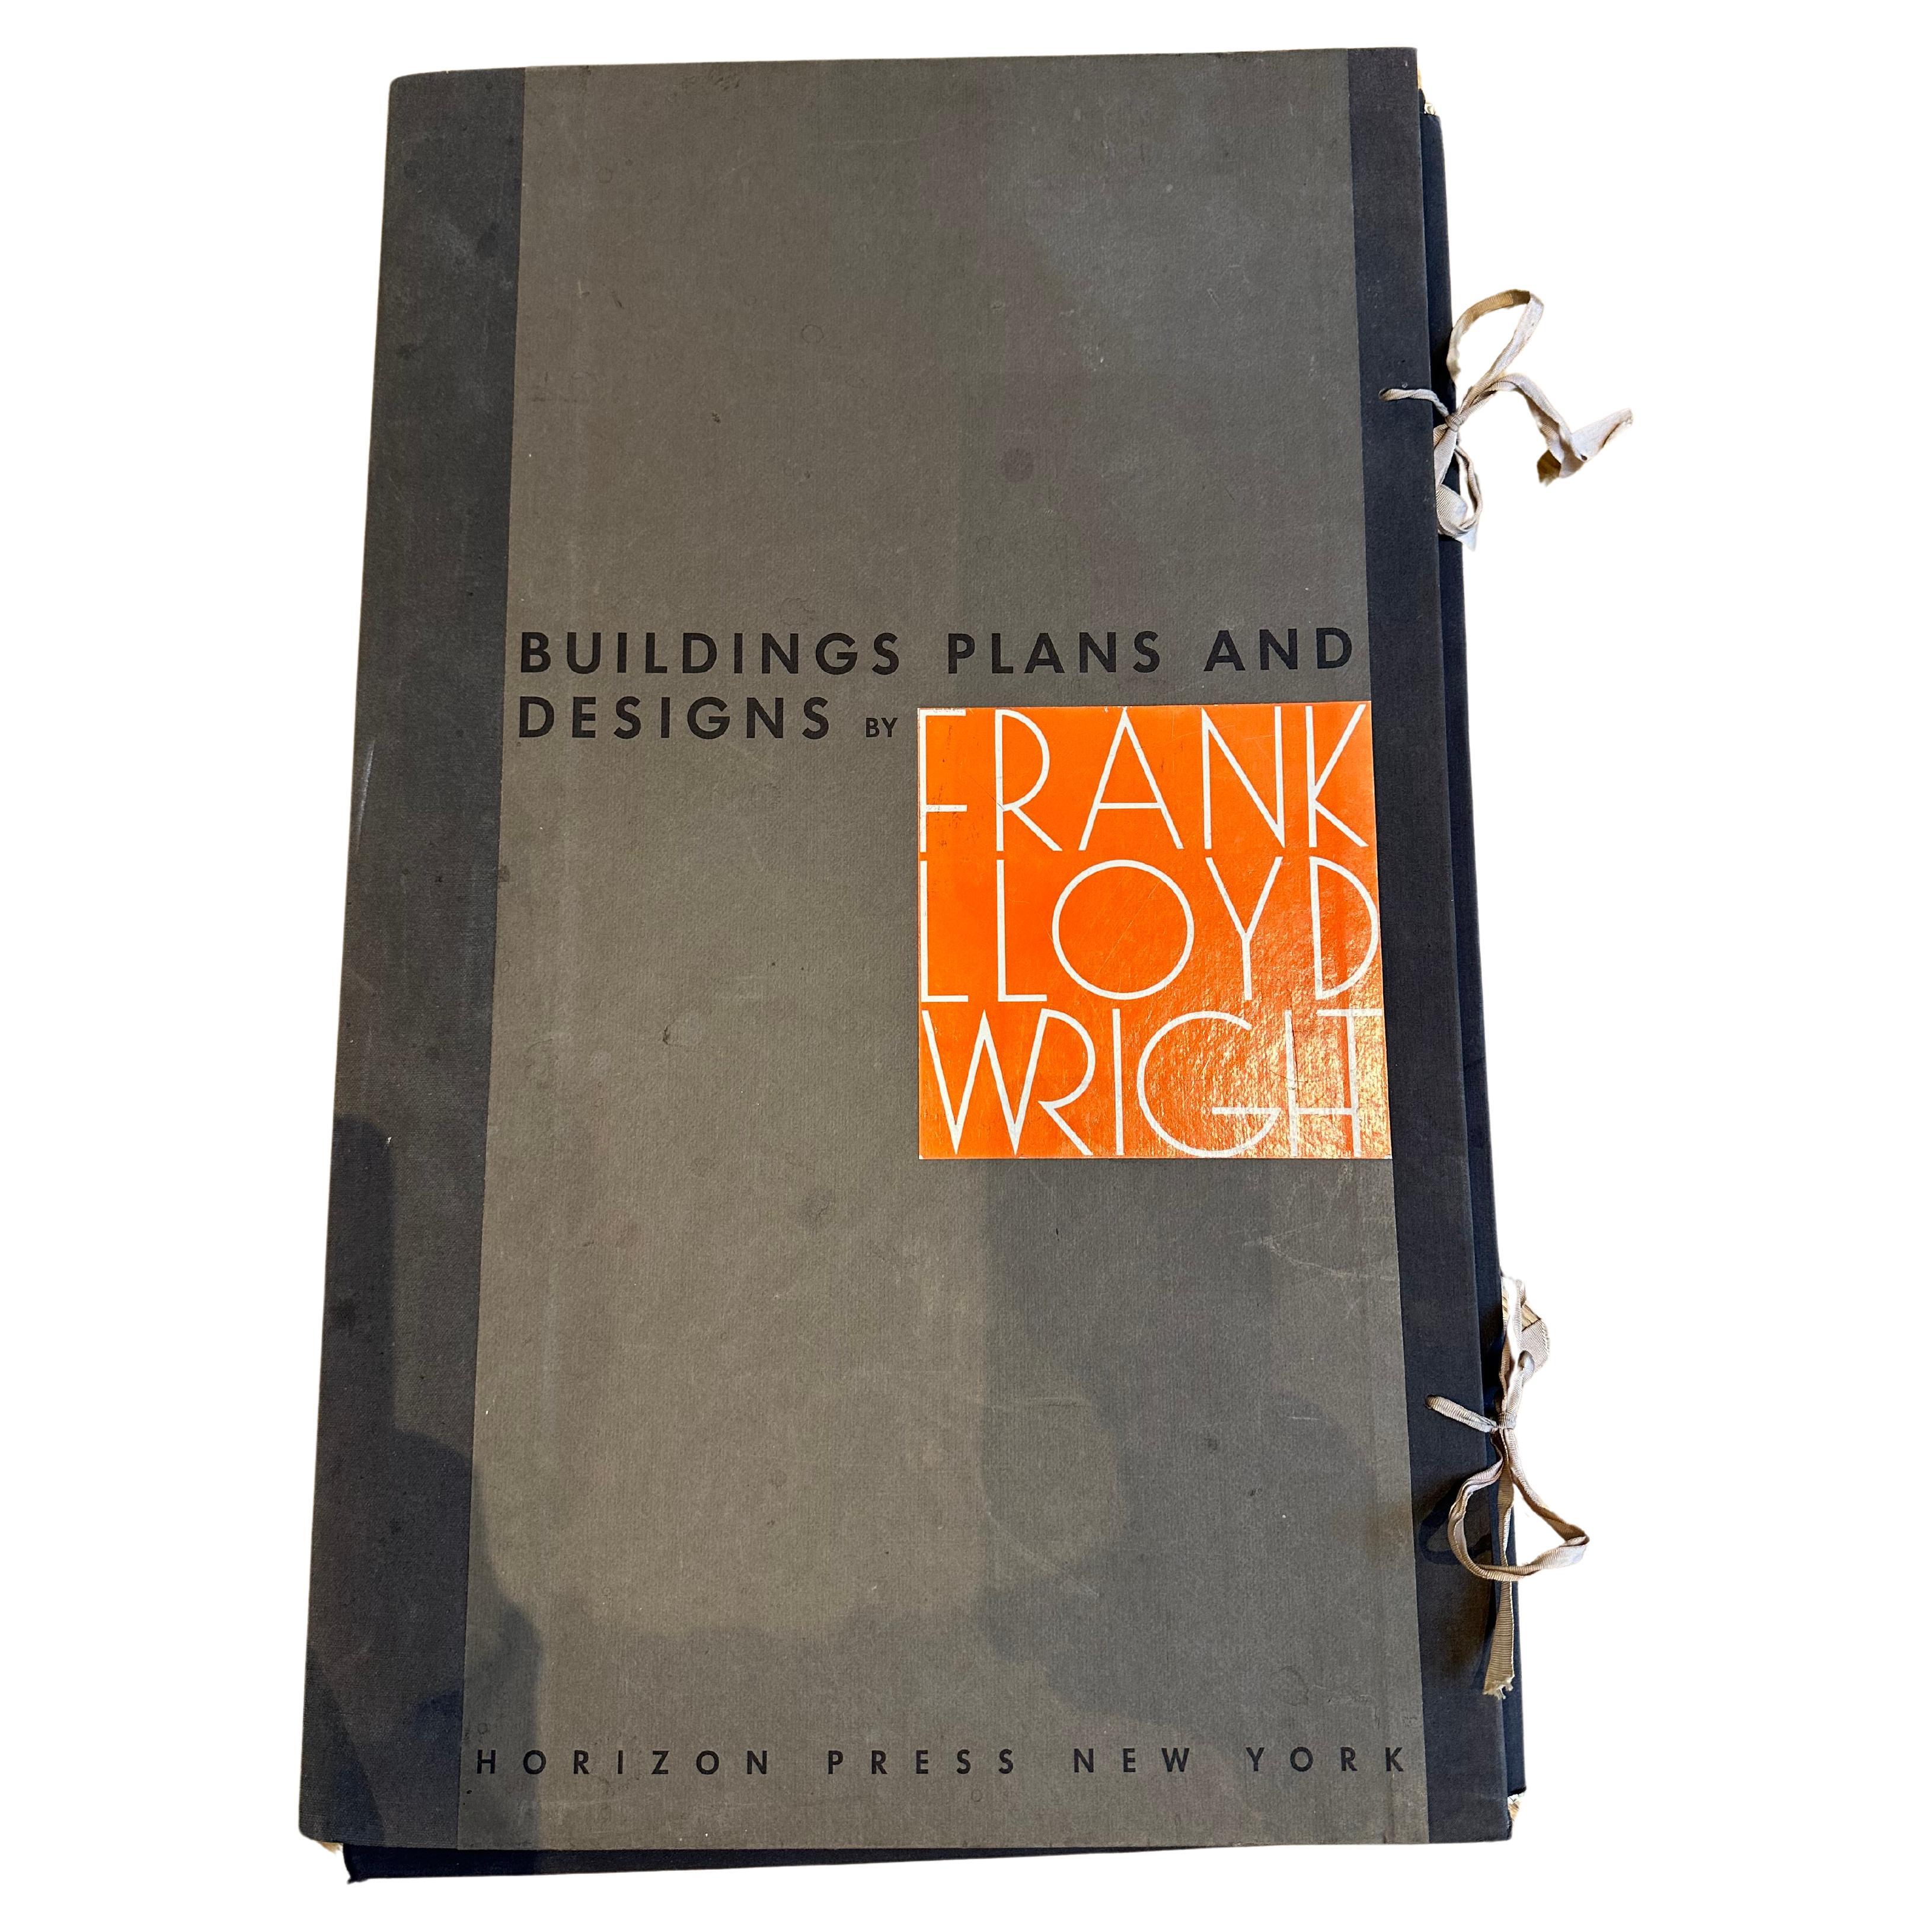 Baupläne und -designs von Frank Lloyd Wright  Große Plattenlithografien